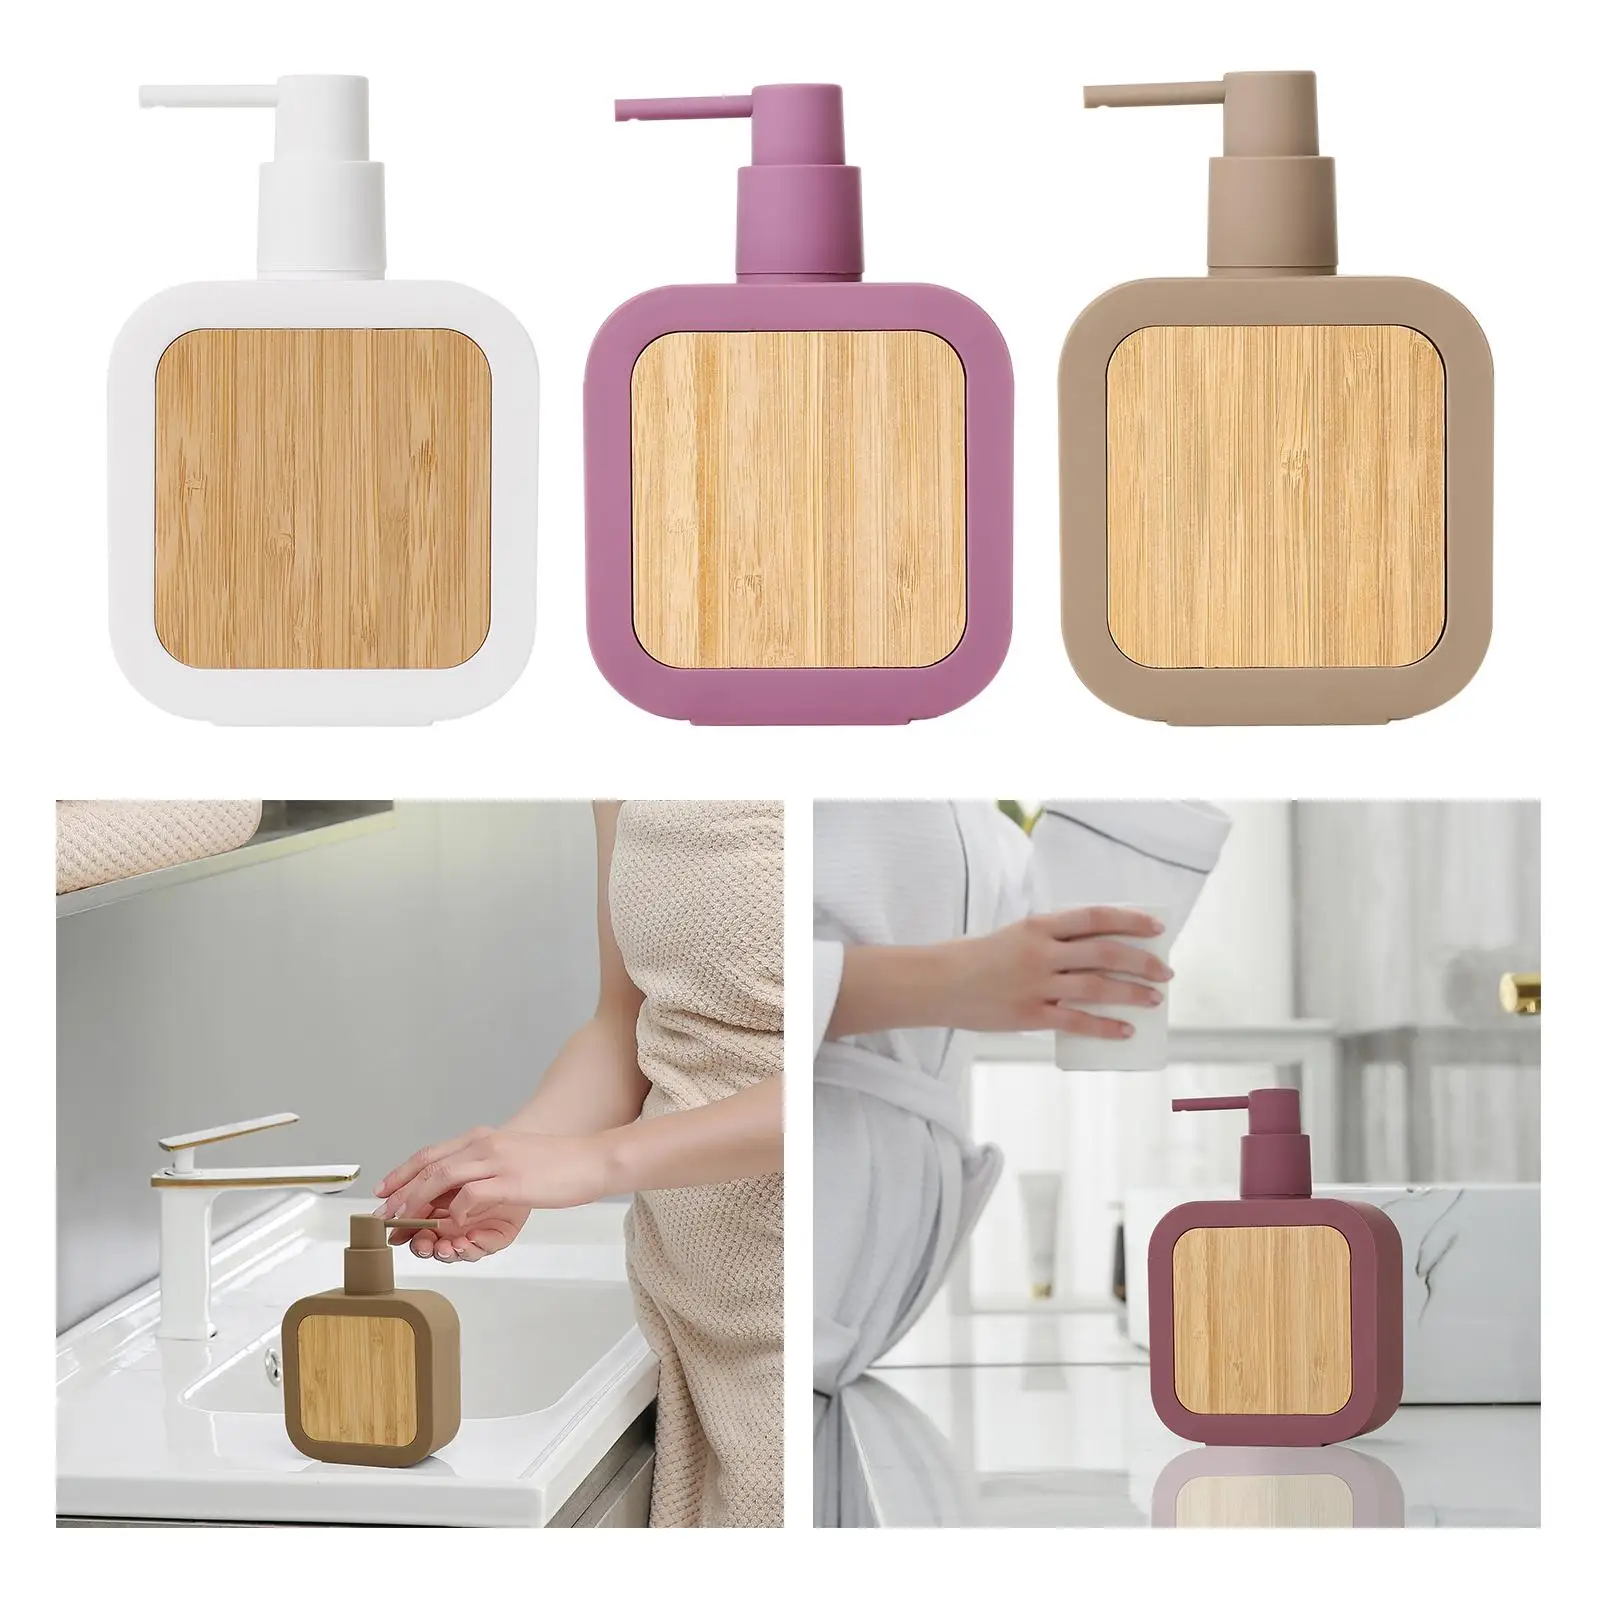 390ml Soap Dispenser Bathroom Manual Soap Dispenser Easy to Refill Kitchen